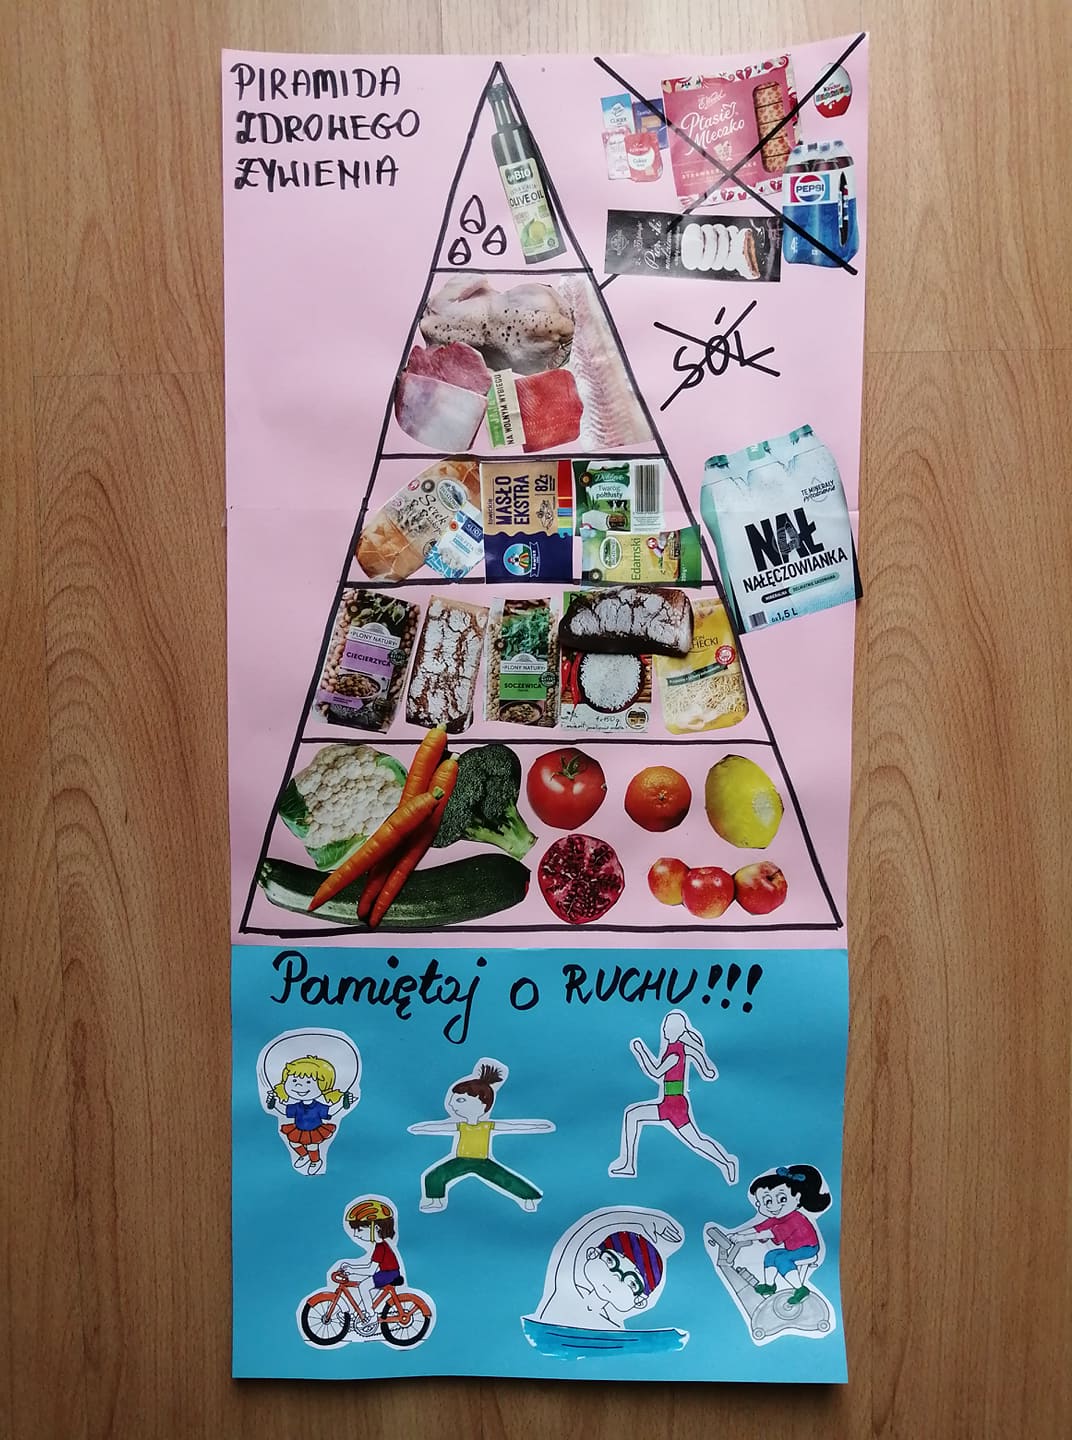 Piramida zdrowego żywienia – zabawa edukacyjna